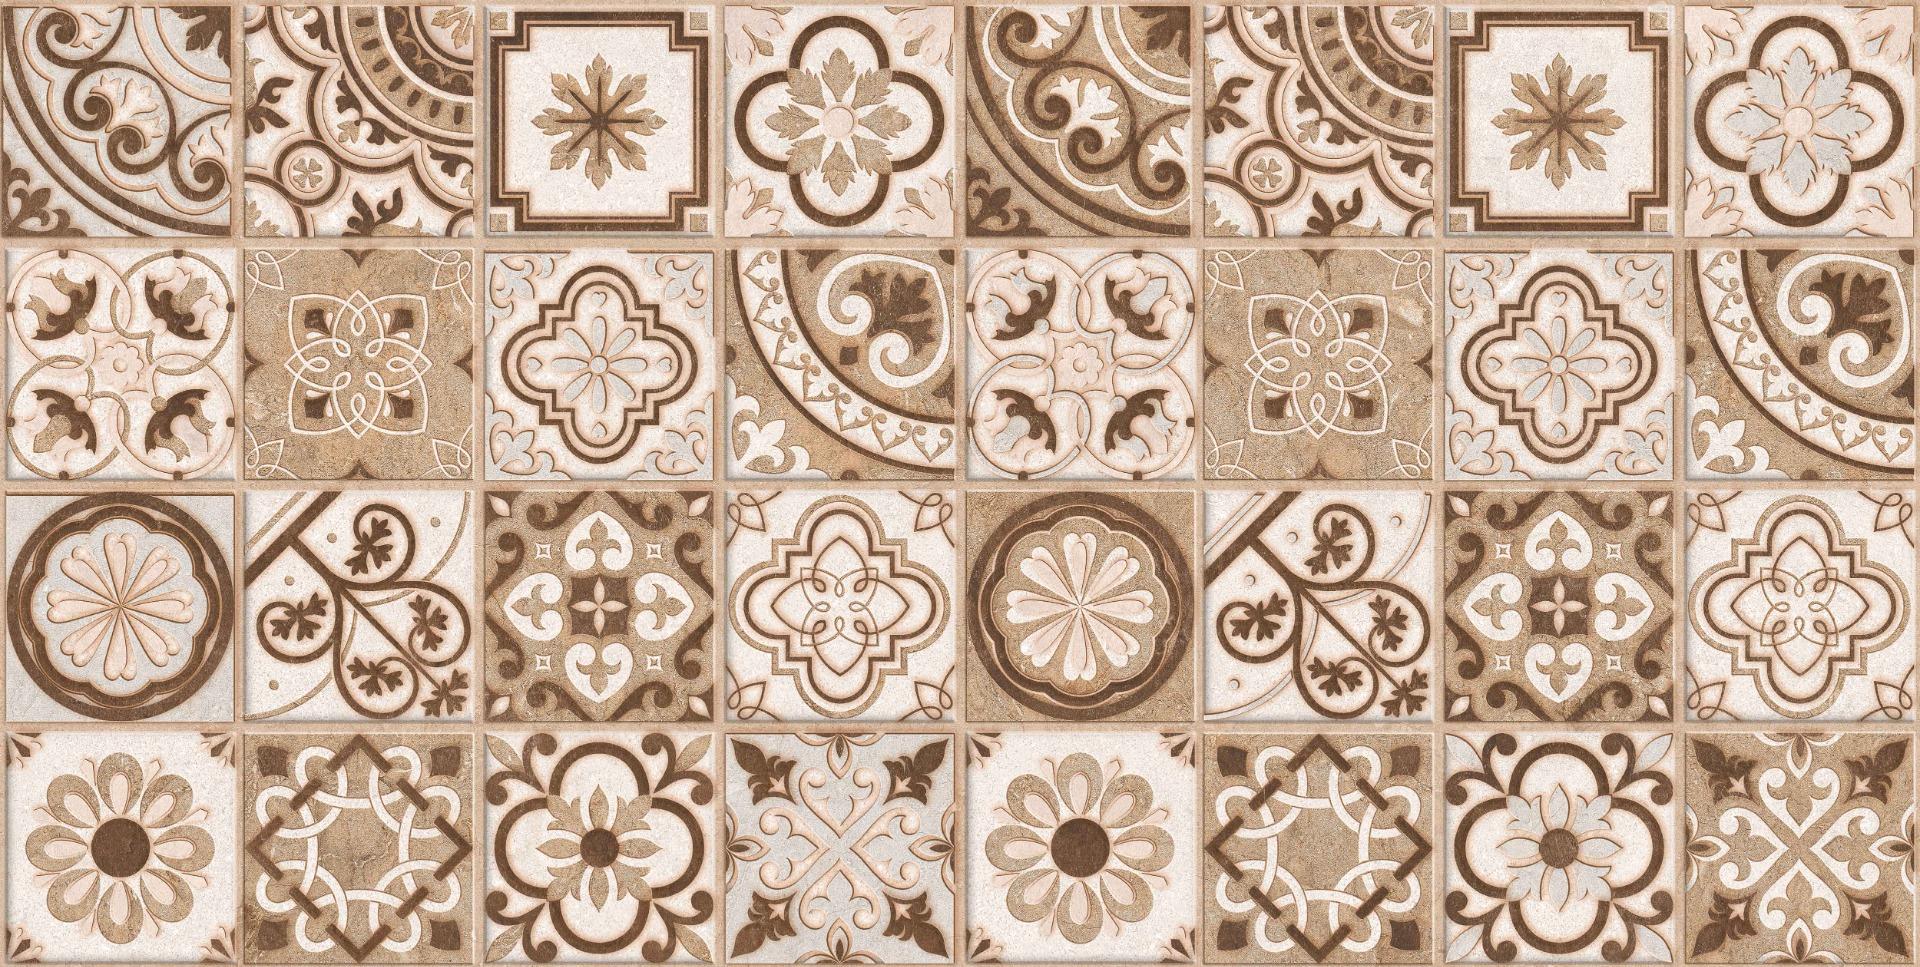 Matte Finish Tiles for Bathroom Tiles, Living Room Tiles, Kitchen Tiles, Bedroom Tiles, Accent Tiles, Bar/Restaurant